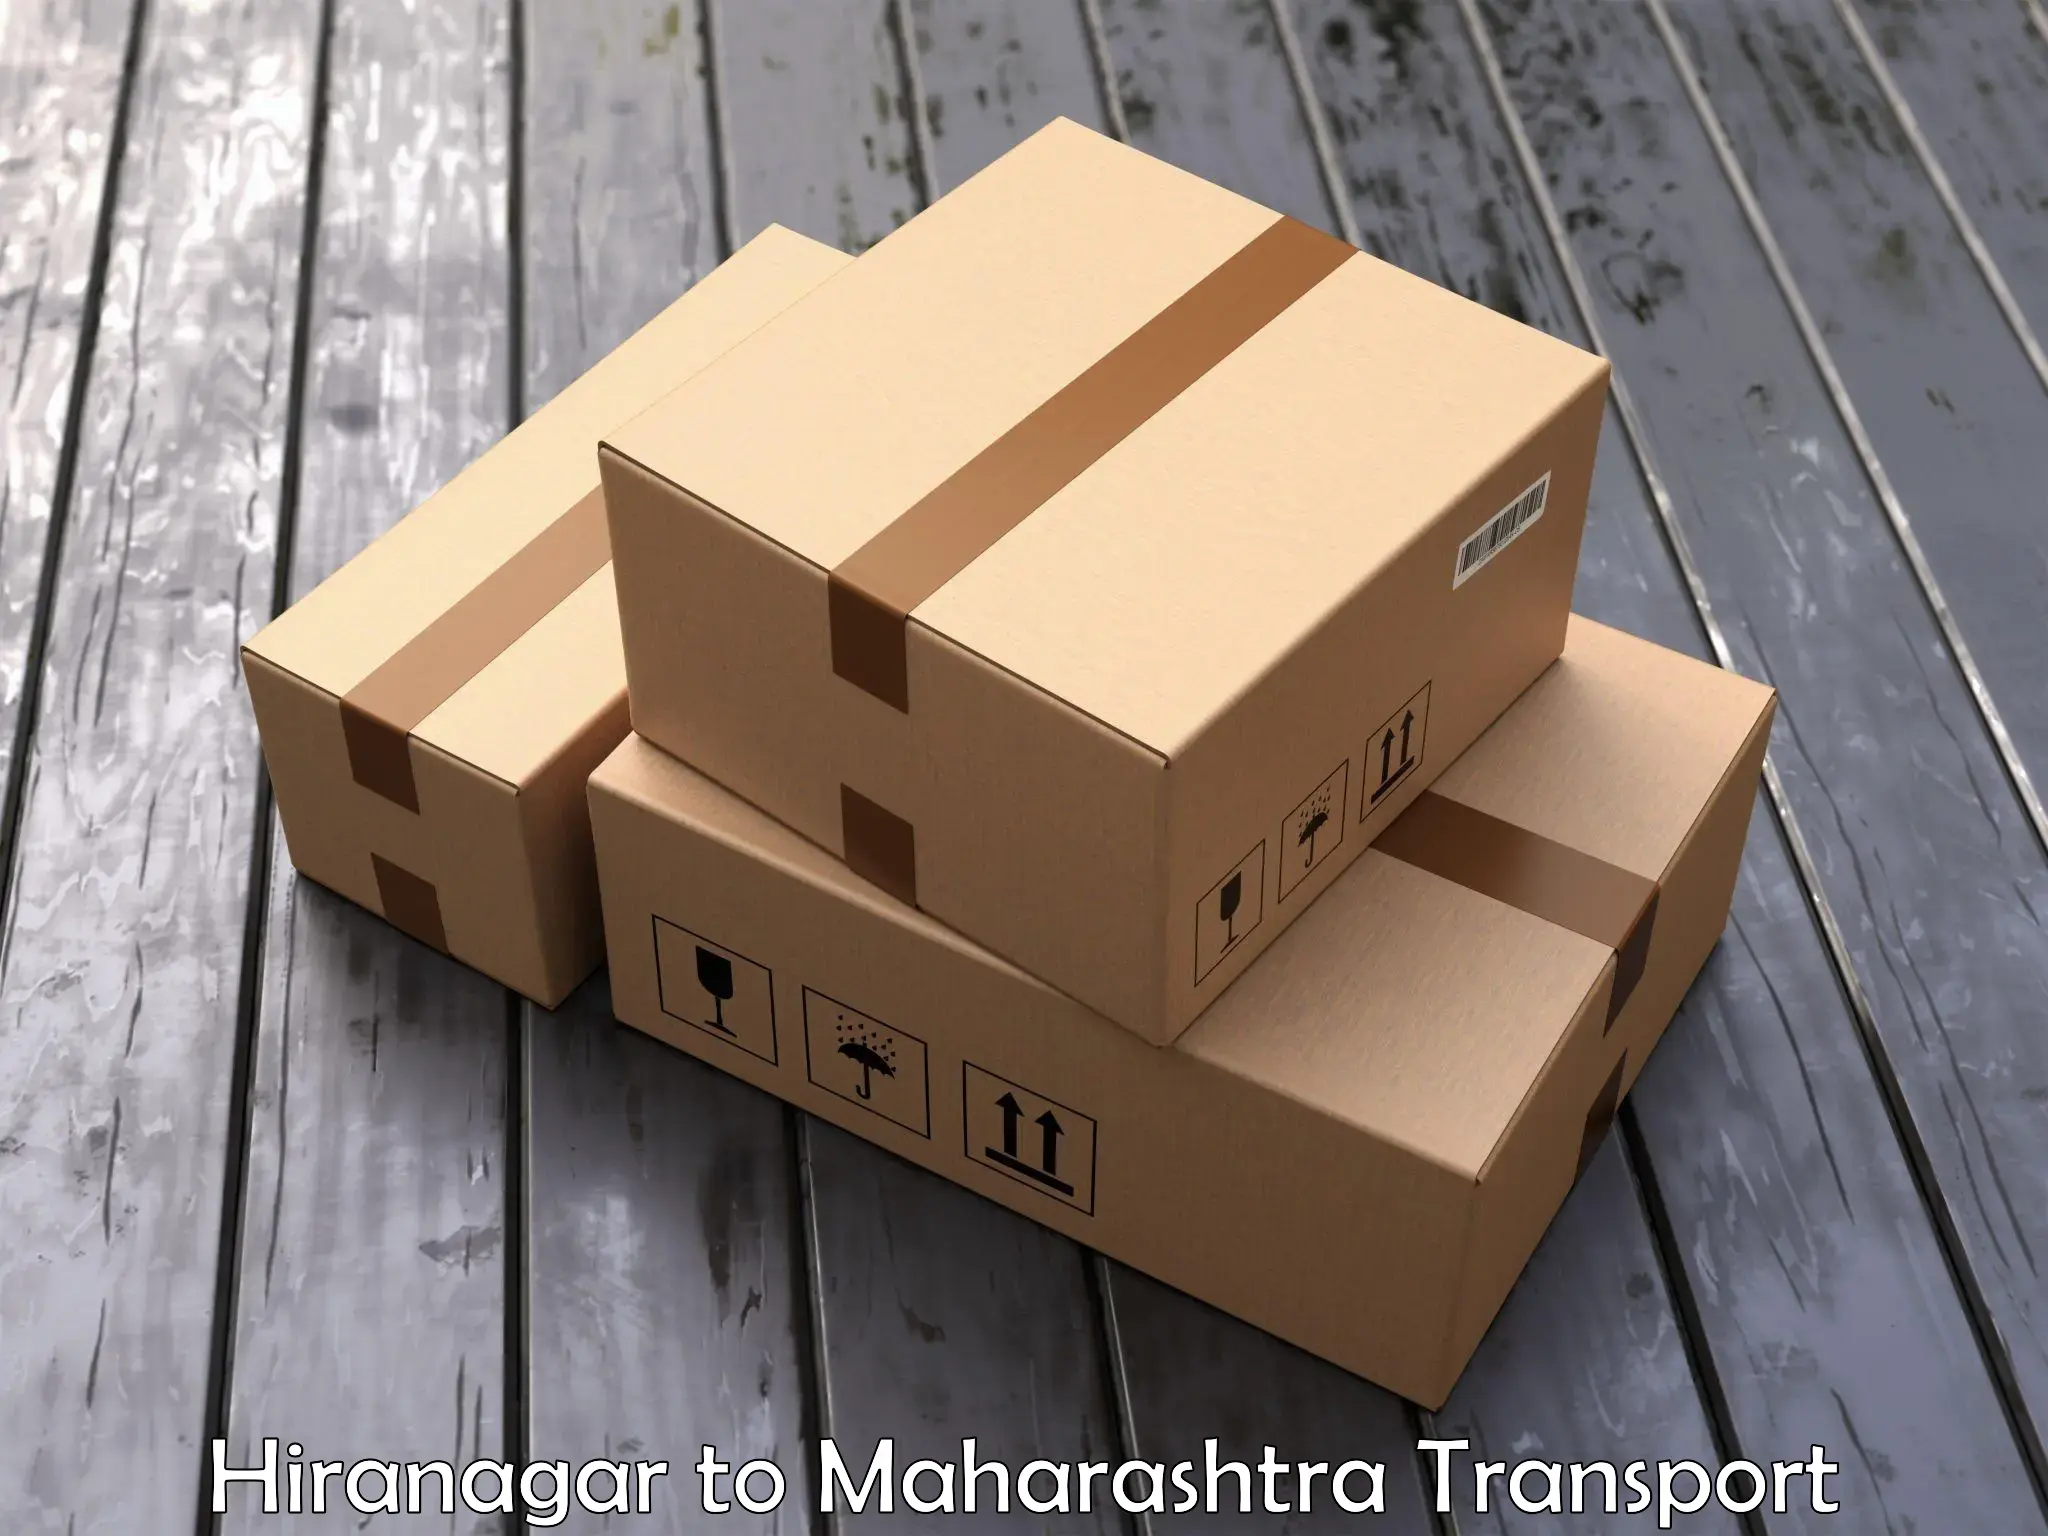 Road transport online services Hiranagar to Vasai